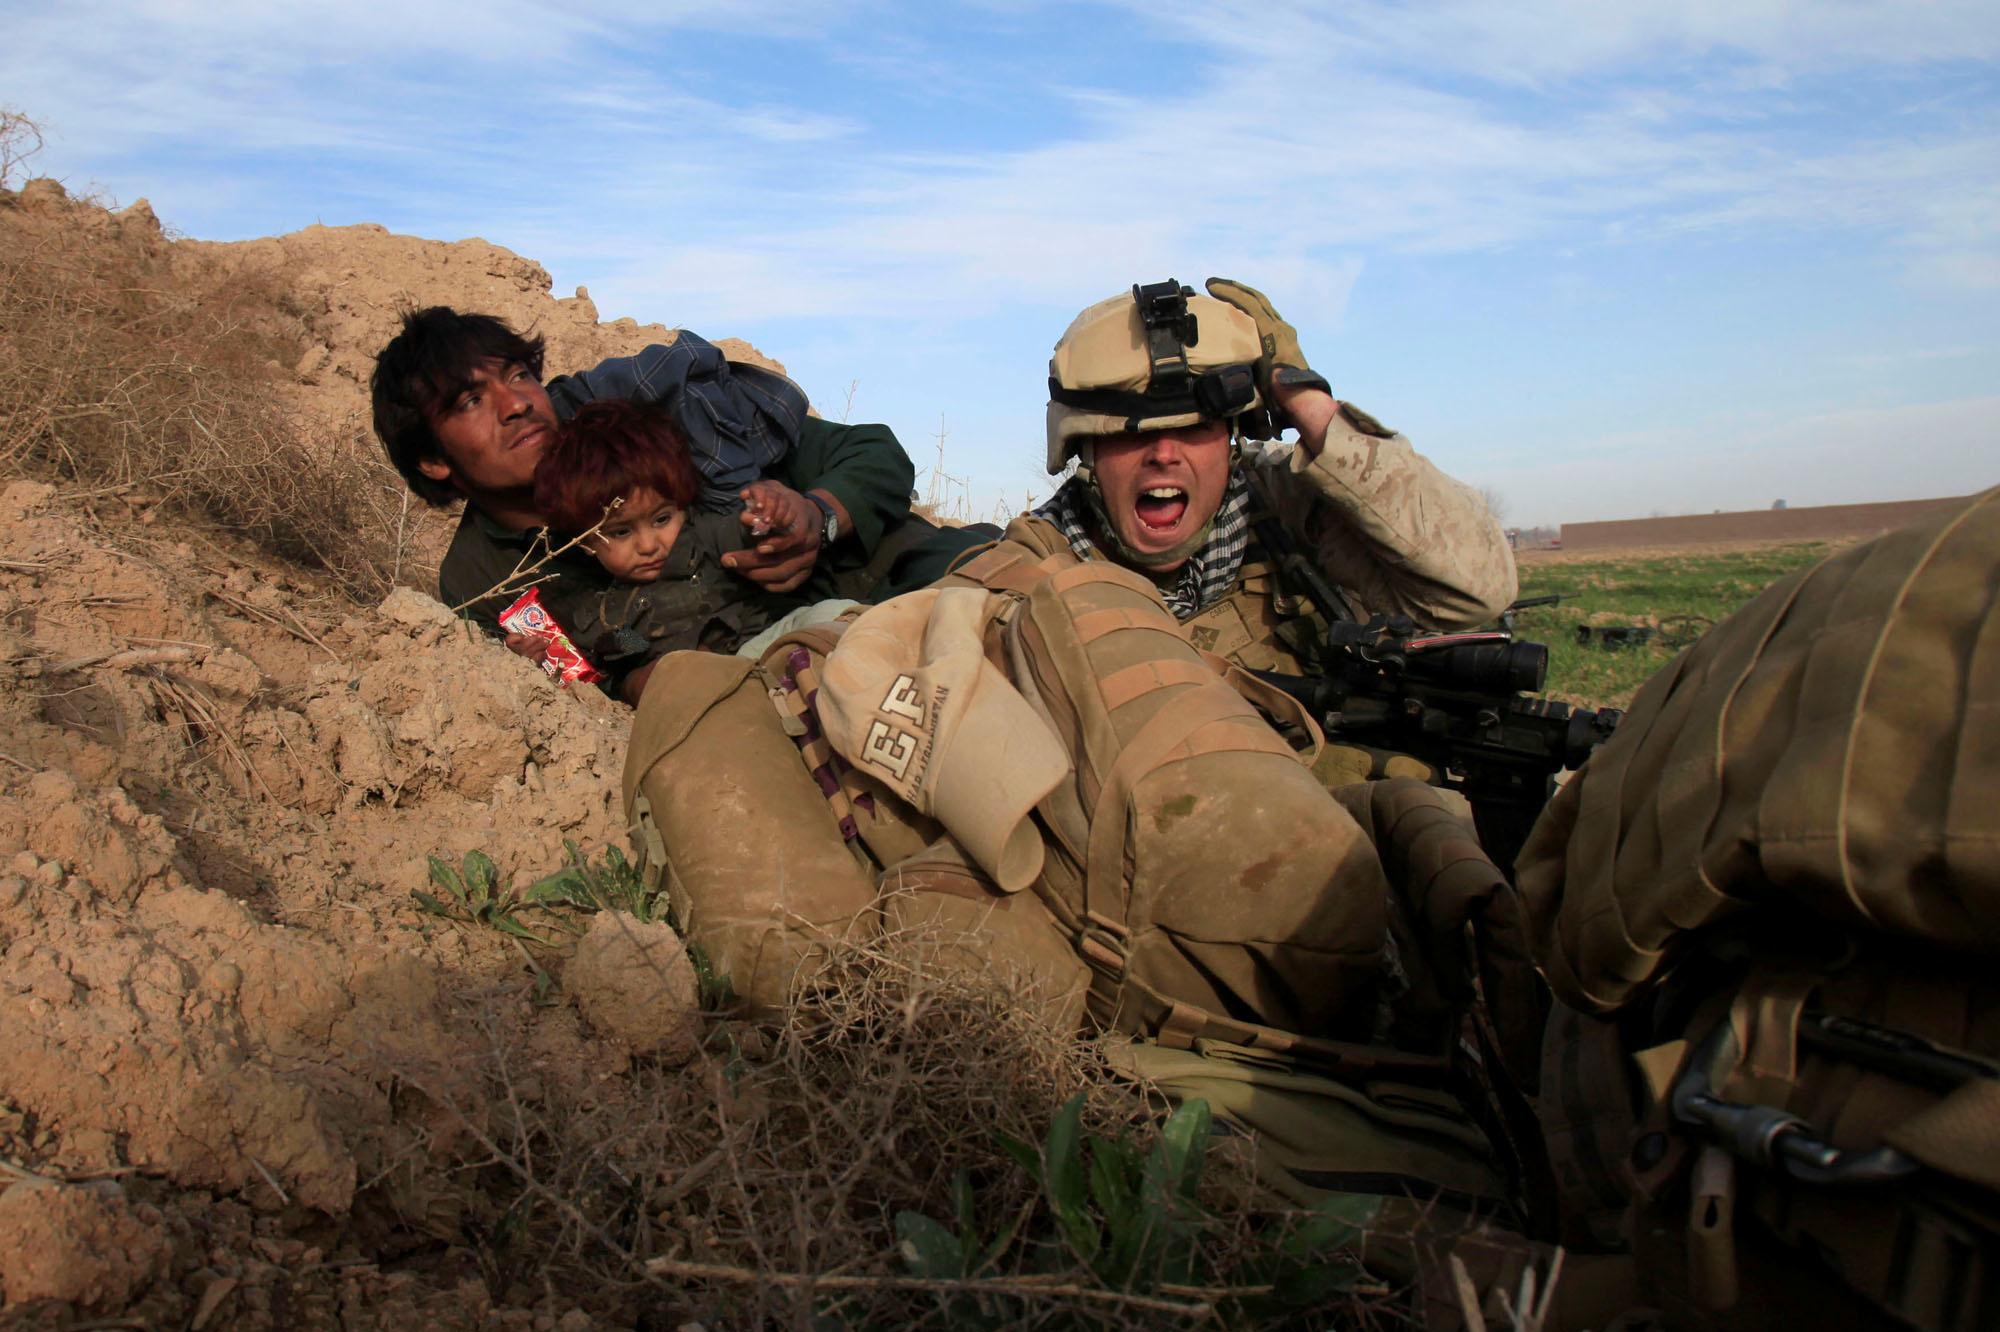 13 février 2010 : le caporal Chris Sanderson, 24 ans, originaire de Flemington, New Jersey, crie en essayant de protéger un Afghan et son enfant après que des combattants talibans aient ouvert le feu dans la ville de Marjah, dans le district de Nad Ali, province de Helmand.